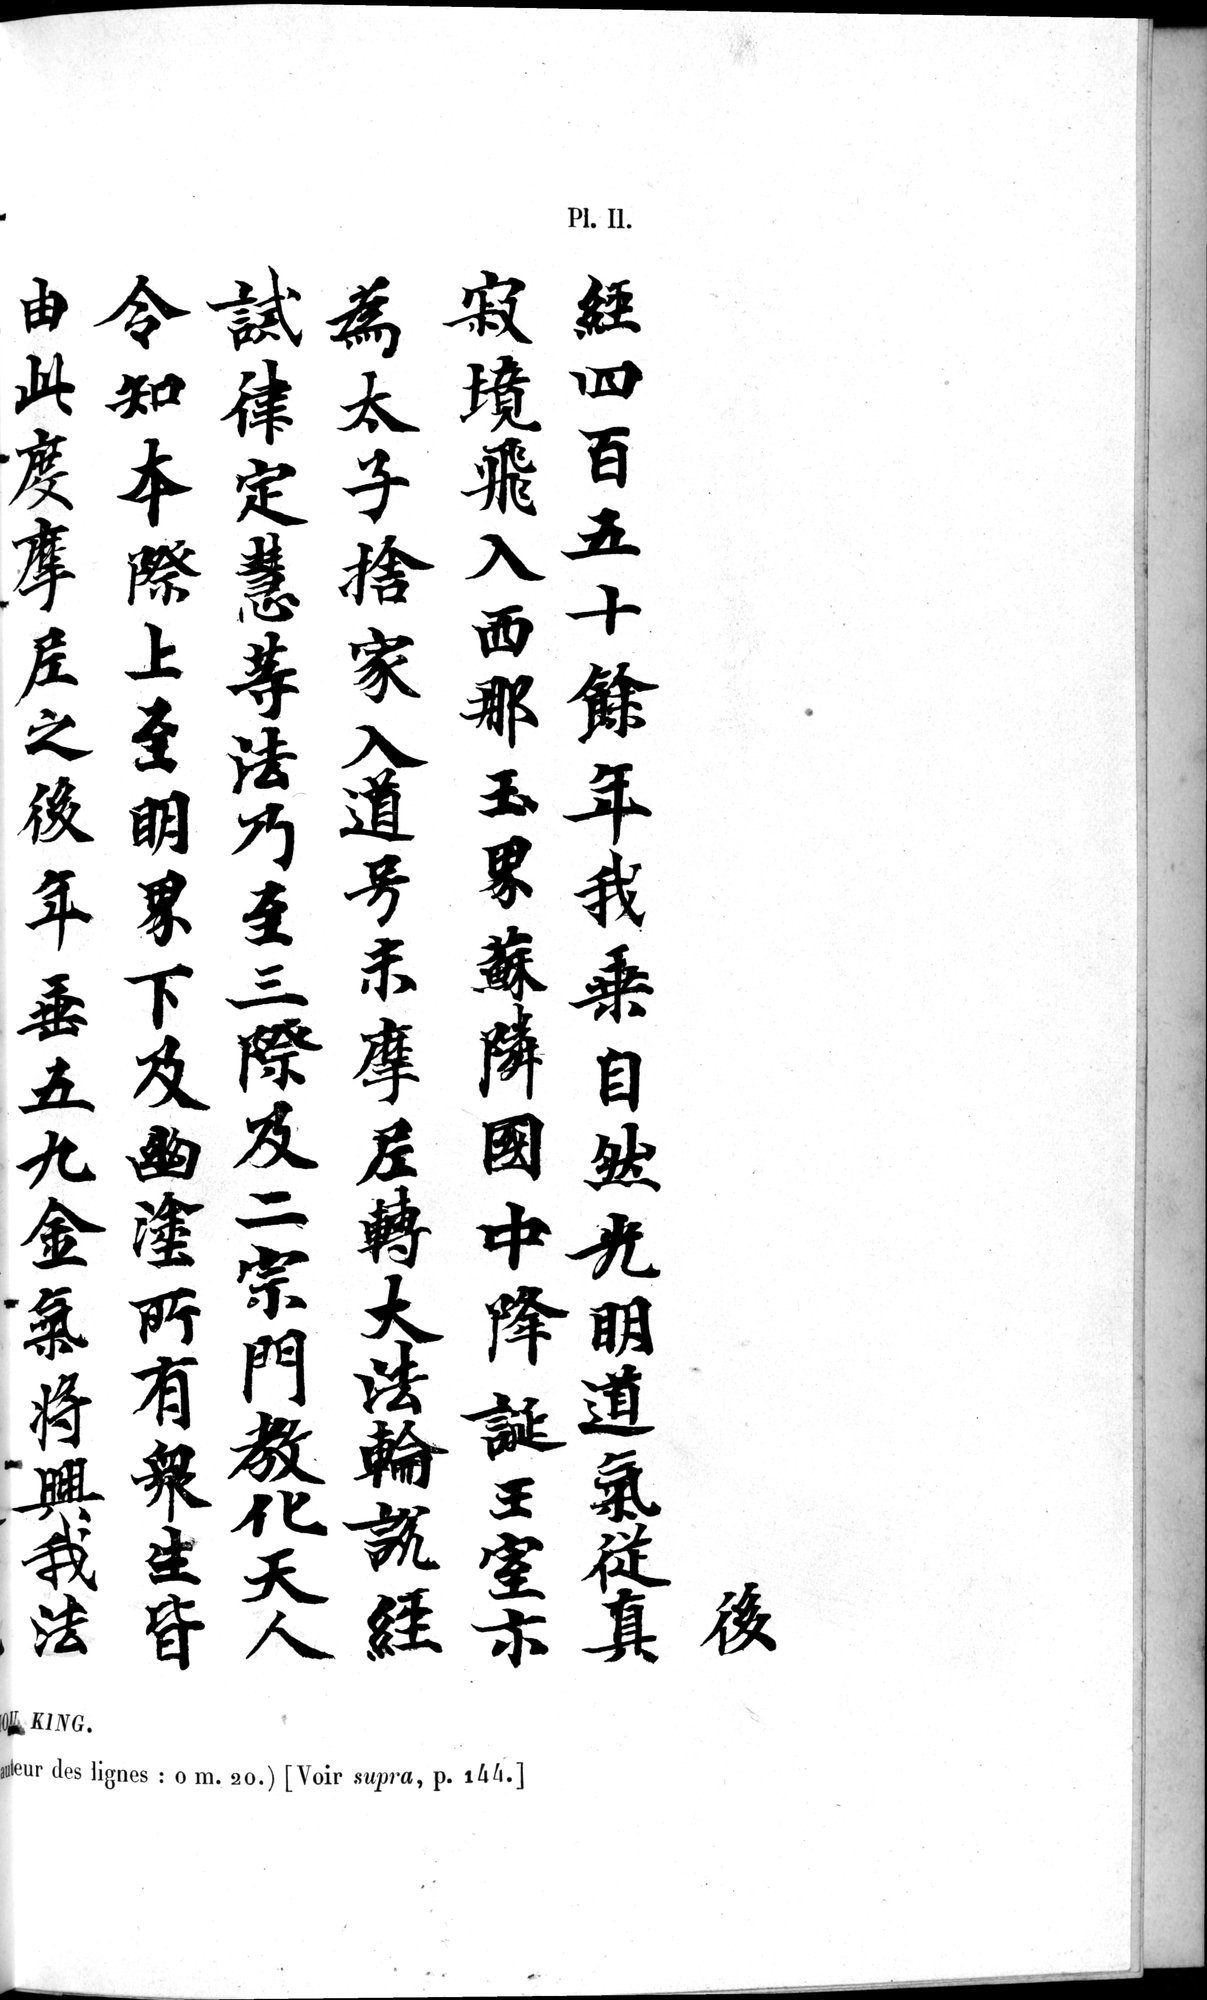 Un traité manichéen retrouvé en Chine : vol.1 / Page 373 (Grayscale High Resolution Image)